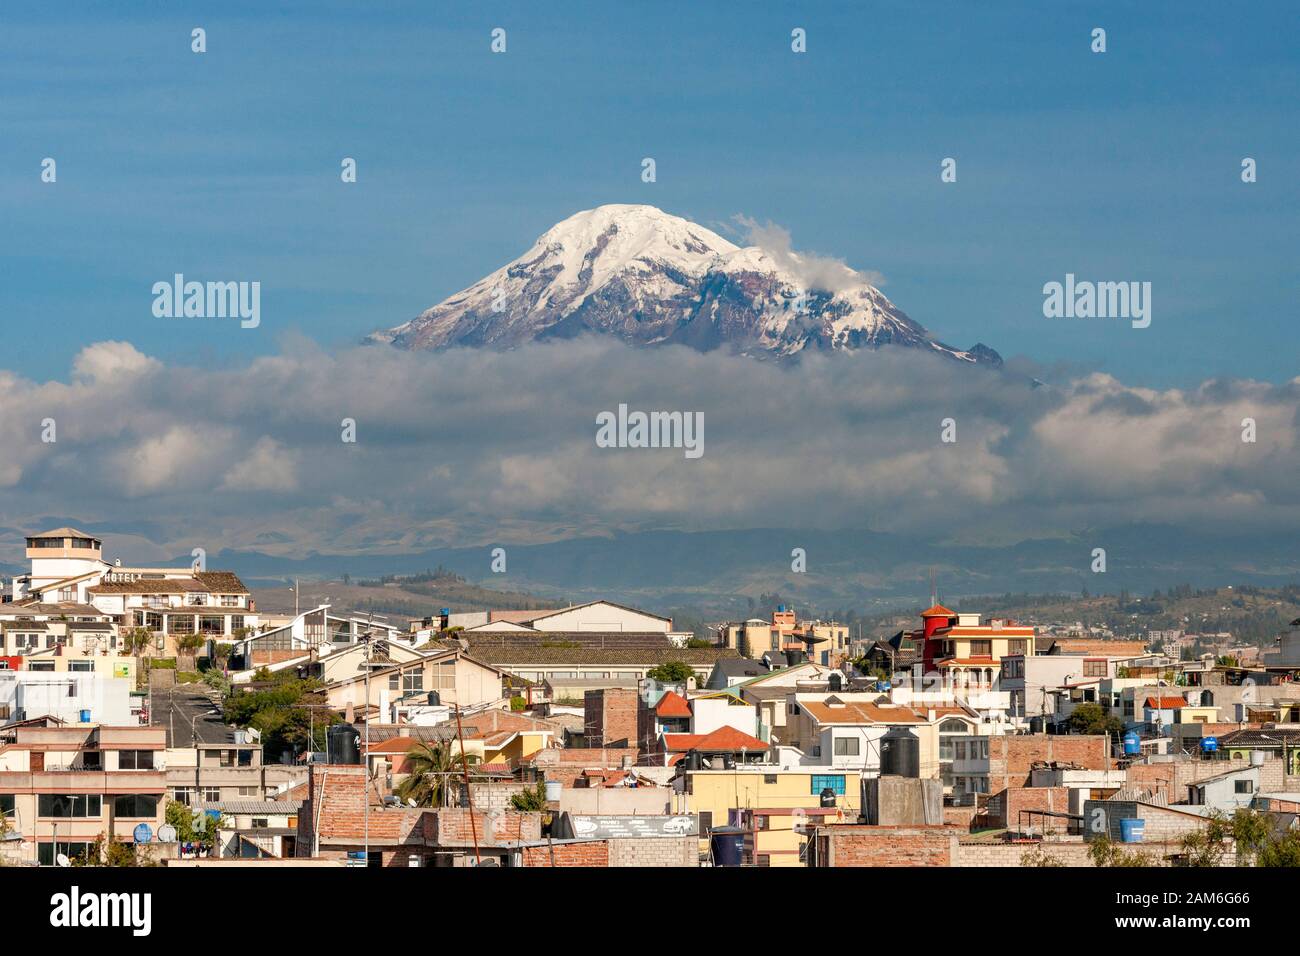 Monte Chimborazo volcán (6268m) visto a través de los tejados de la ciudad de Riobamba. Foto de stock